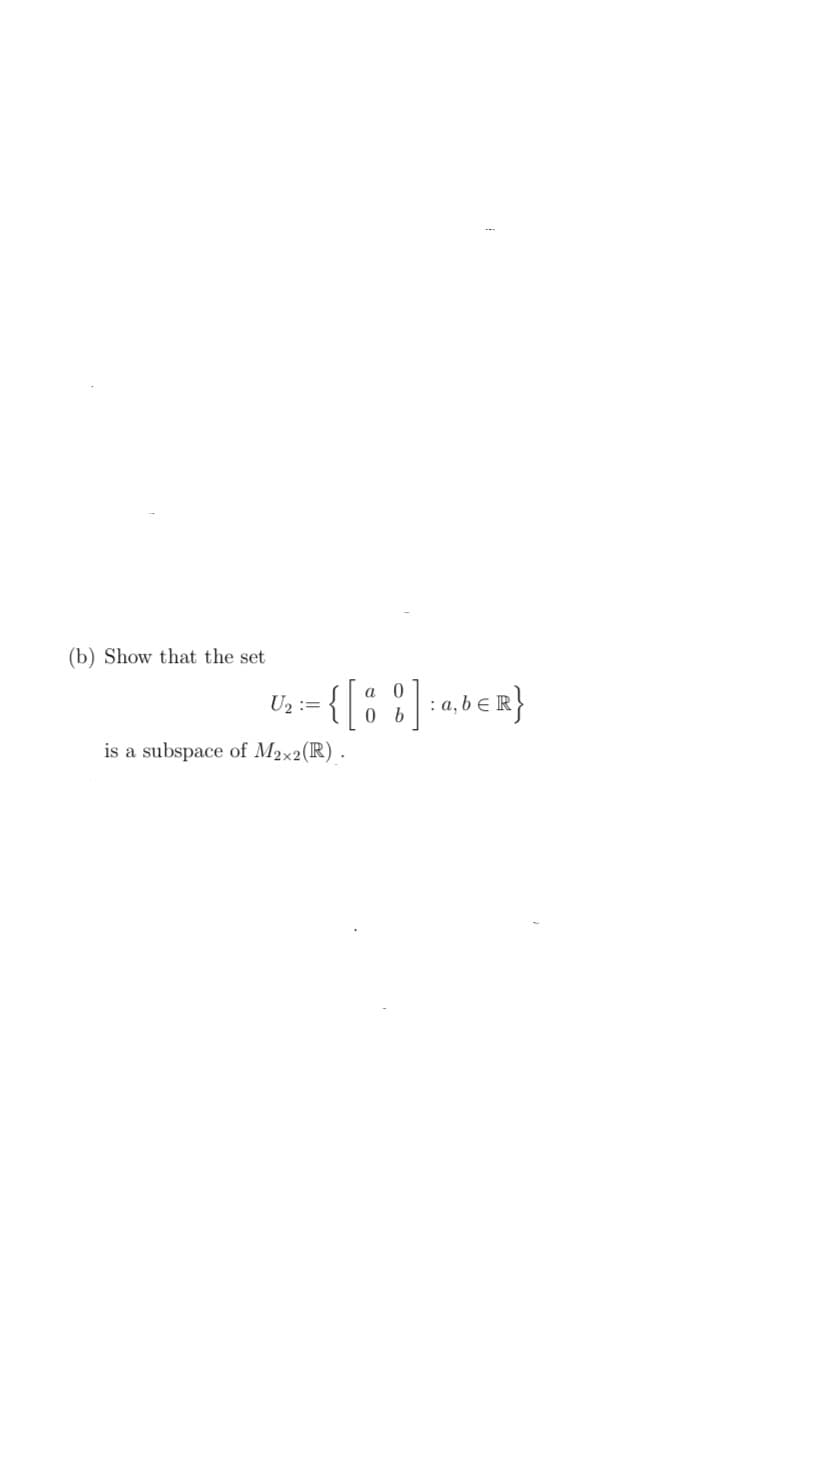 (b) Show that the set
U₂ =
{ [
is a subspace of Max2(R).
a
0
0 b
] : a, b ER}